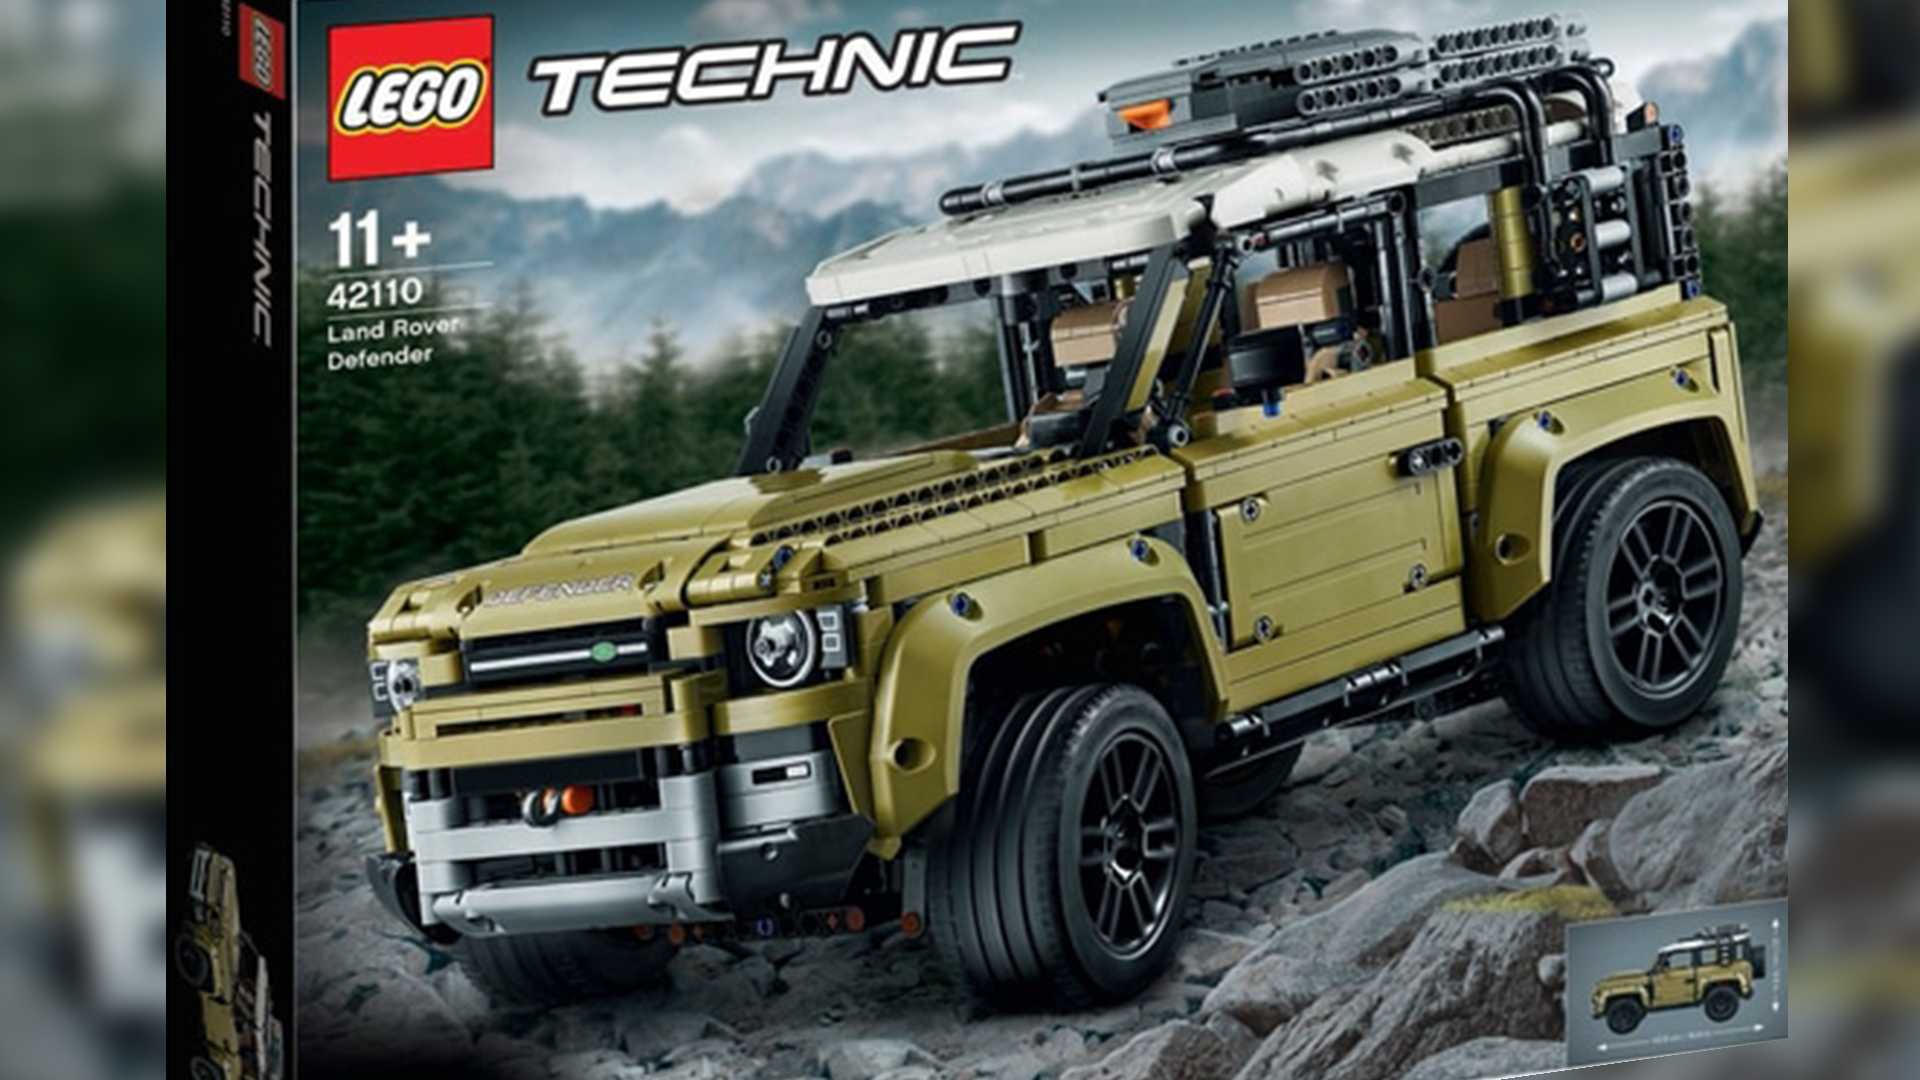 Land Rover Defender 2020